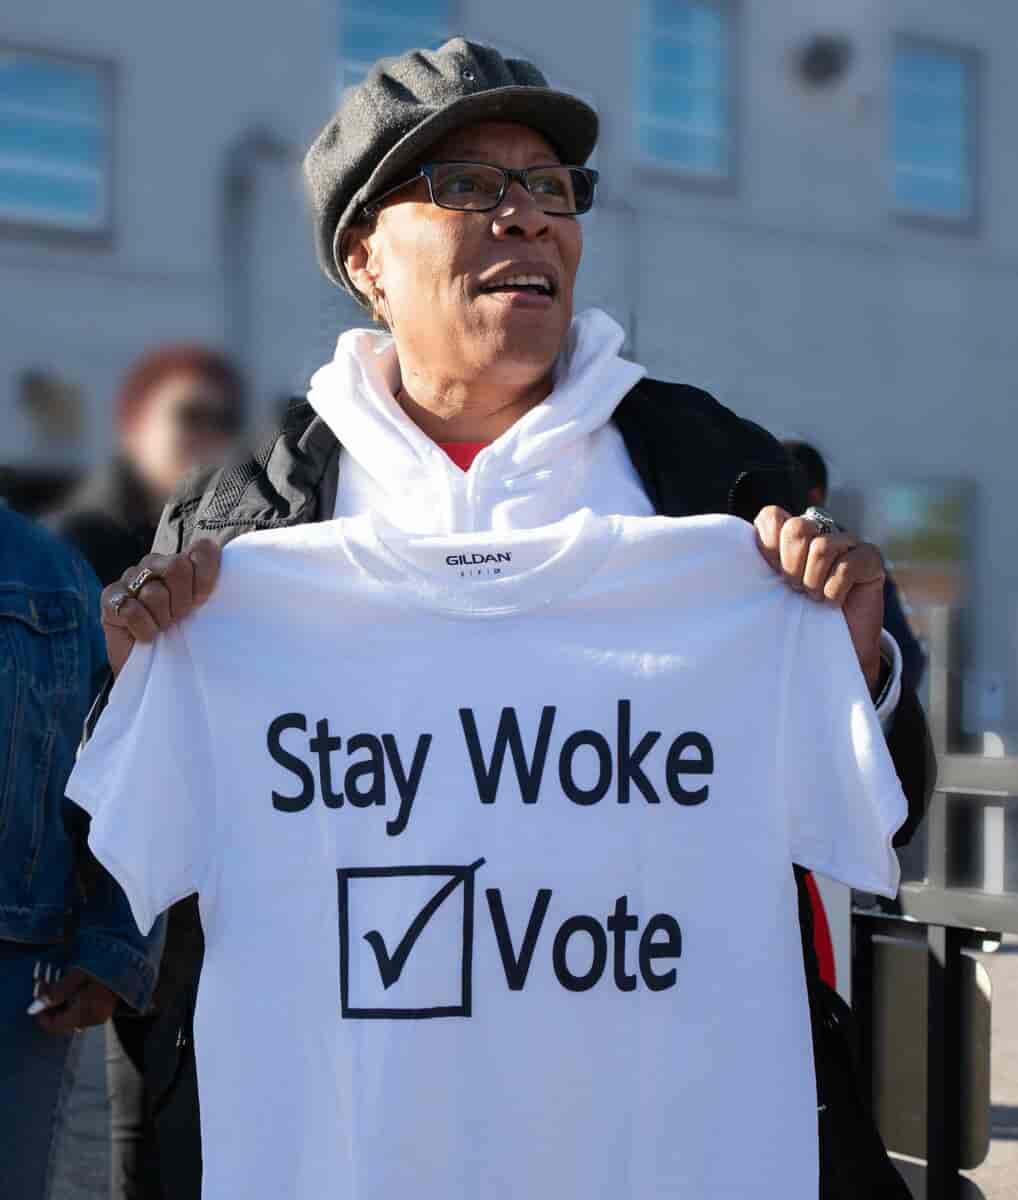 Den demokratiske politiker Marcia Fudge med Stay woke - vote T-shirt i 2018